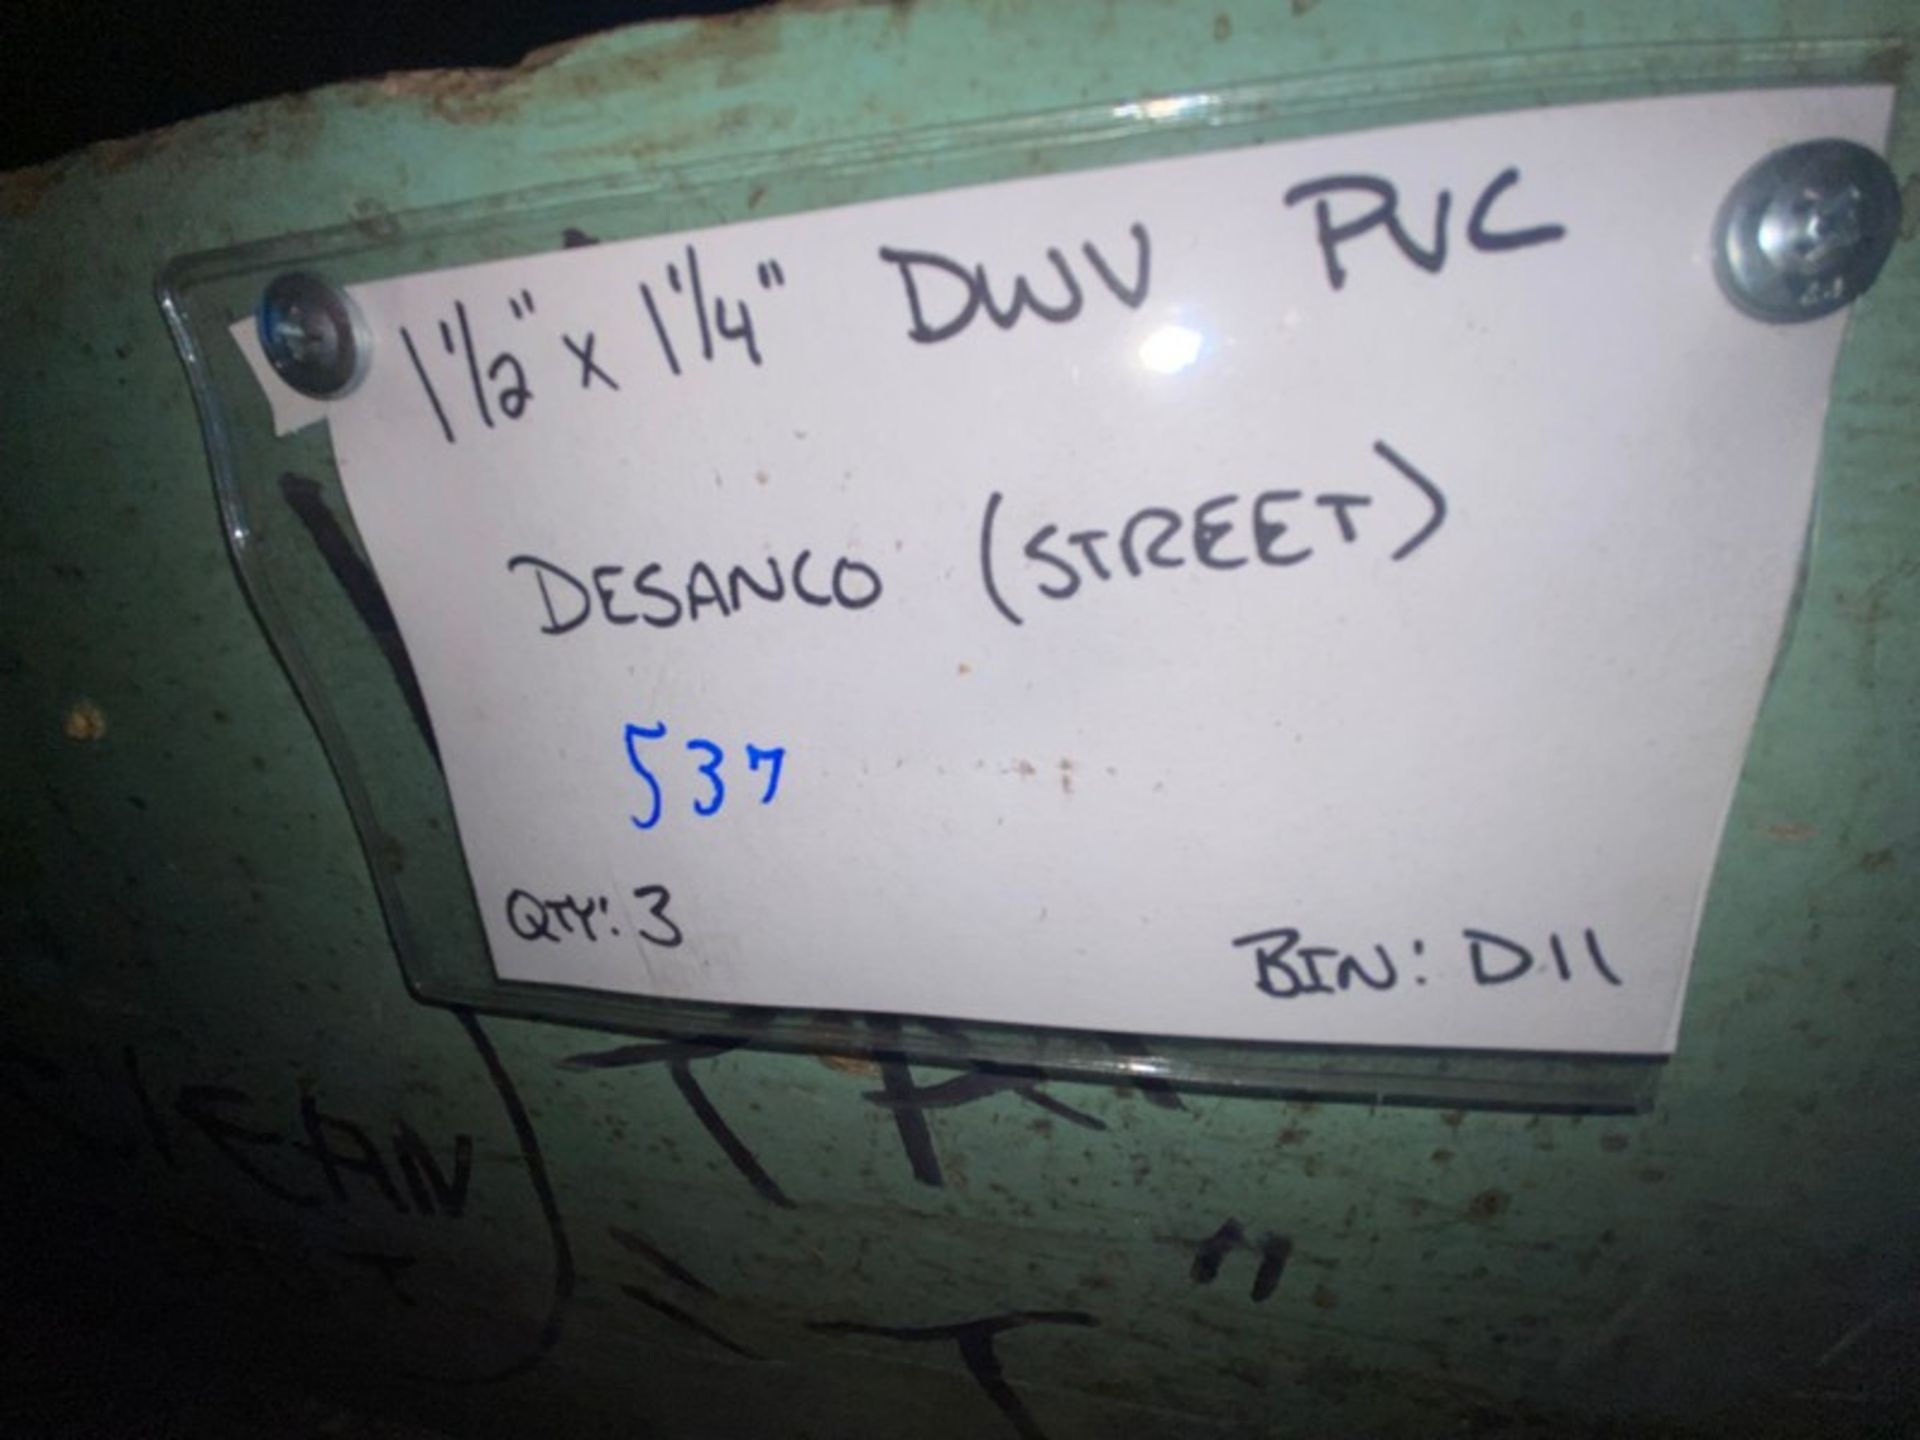 (156) 1 1/2” x 1 1/4” DWV PVC Desanco (HUB)(Bin:D11); 1 1/2” x 1 1/4” DWV PVC Desanco (STREET) ( - Image 9 of 9